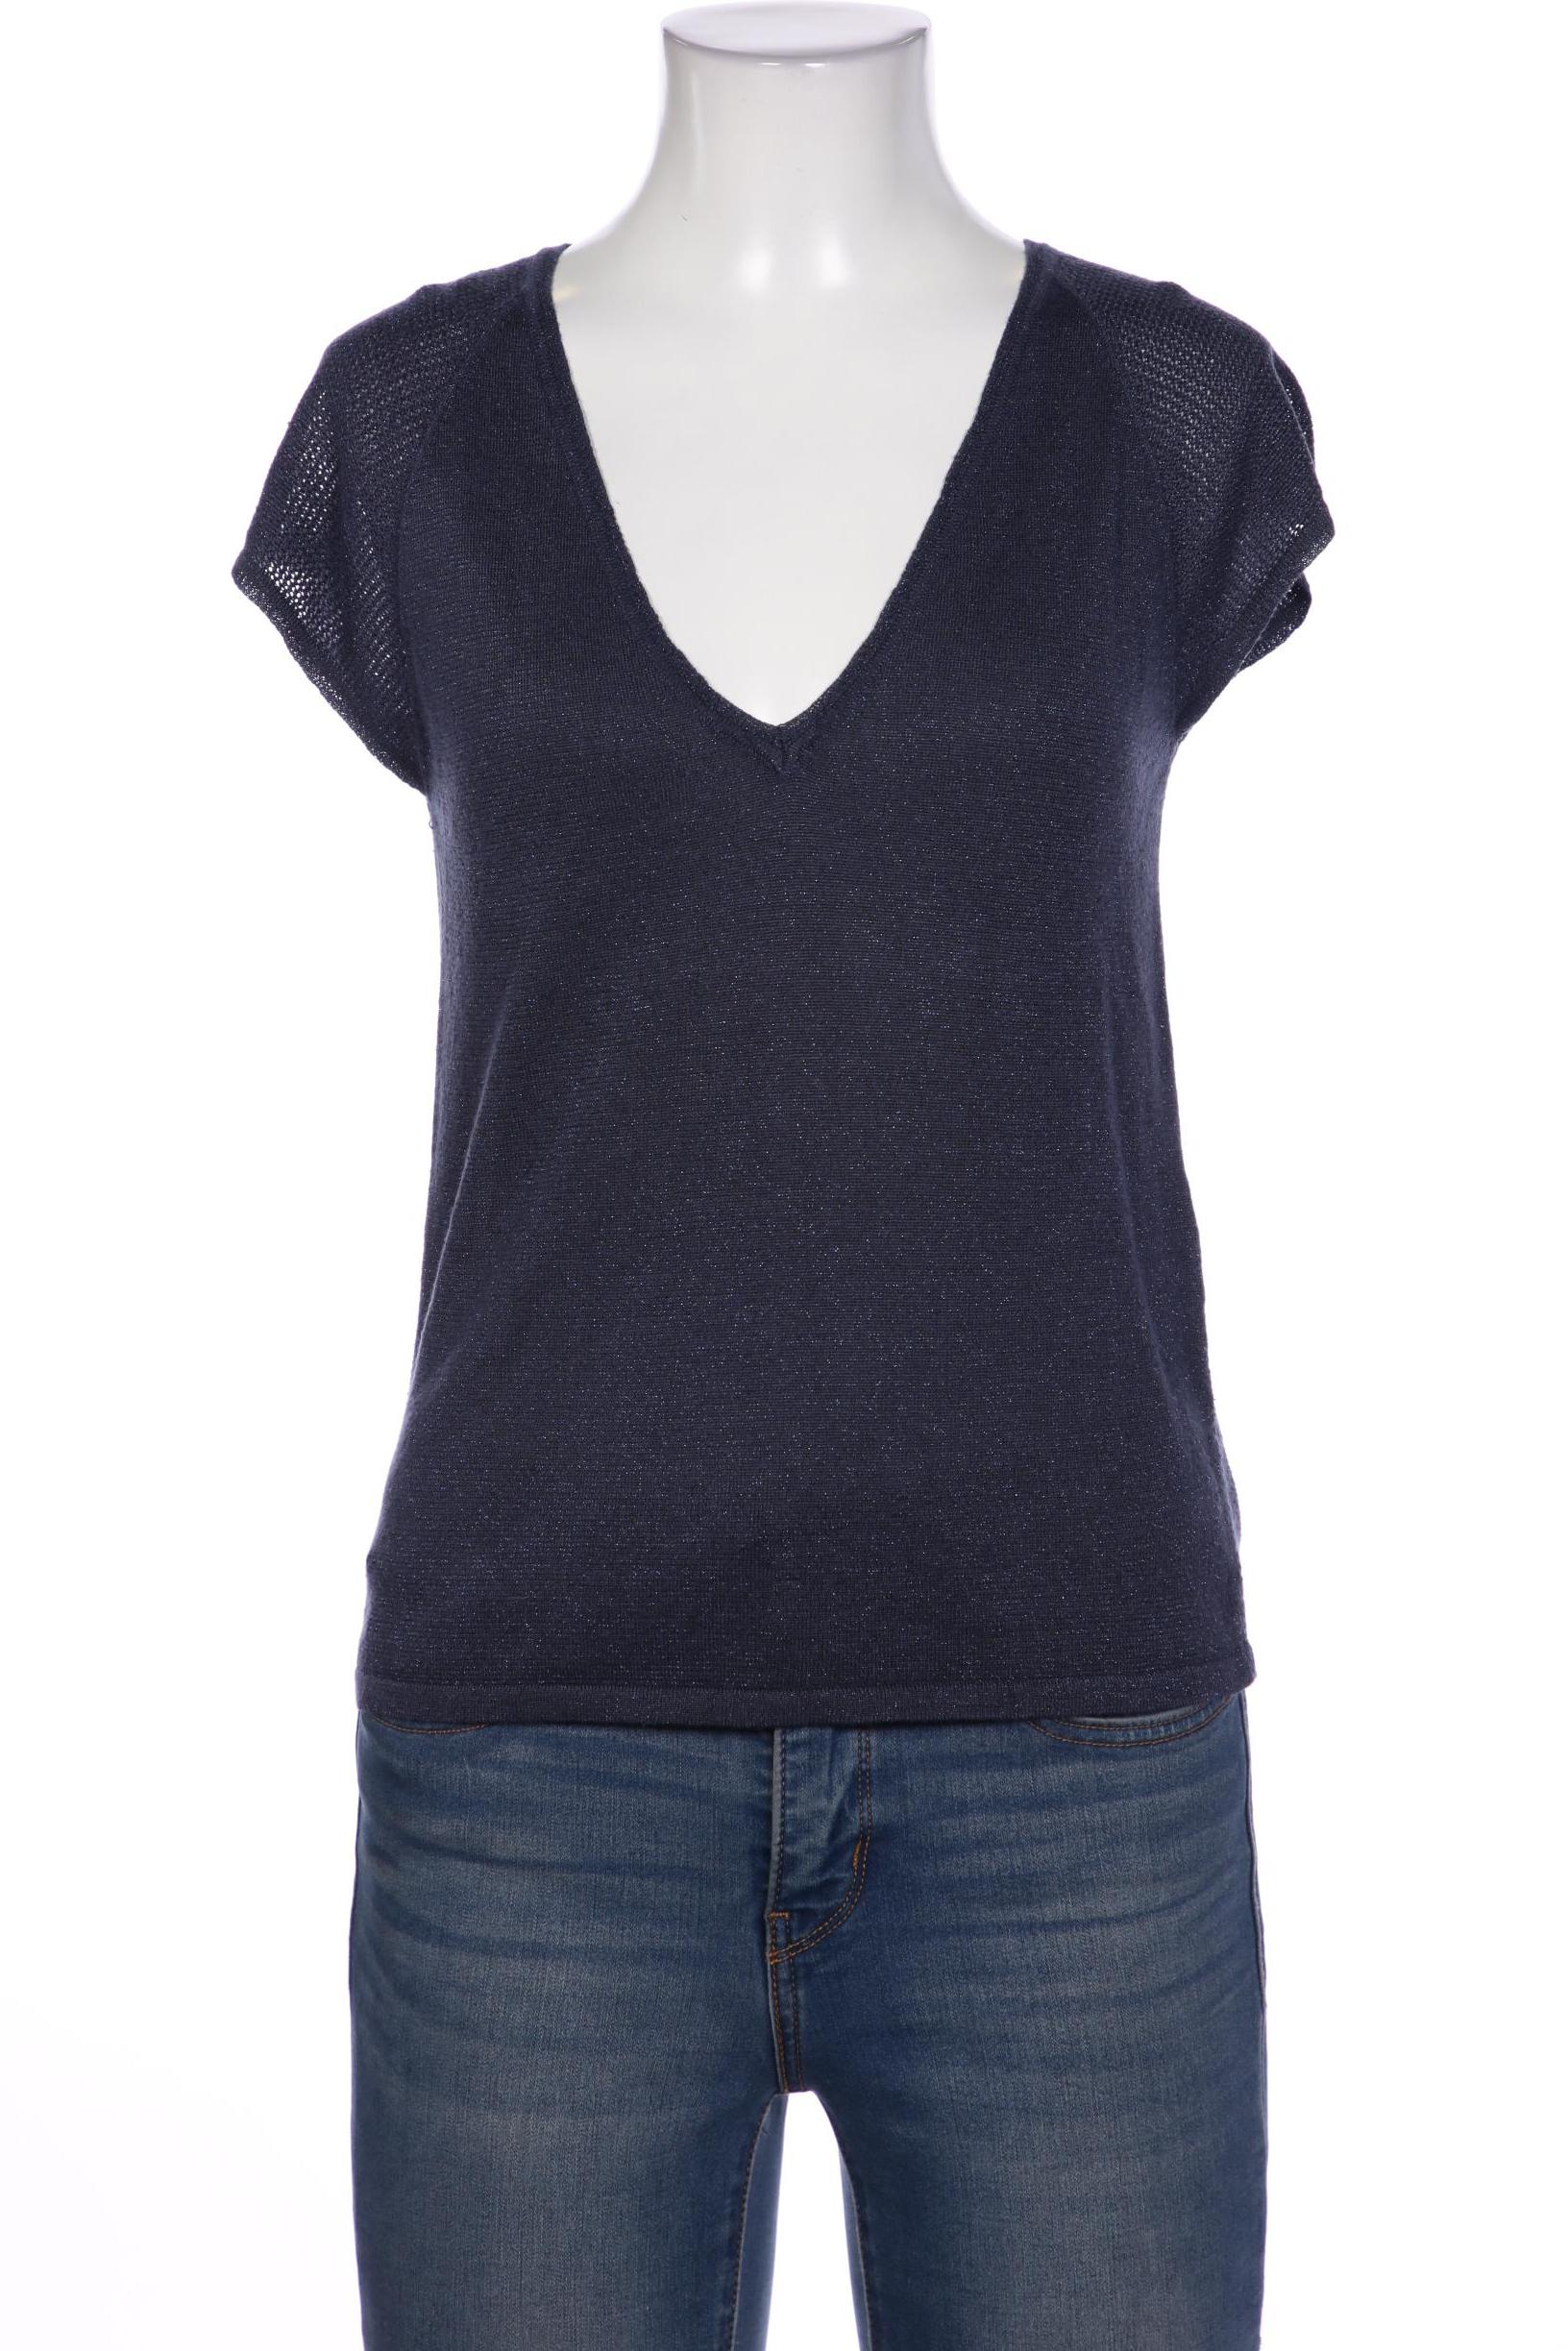 Rosemunde Damen T-Shirt, marineblau von Rosemunde